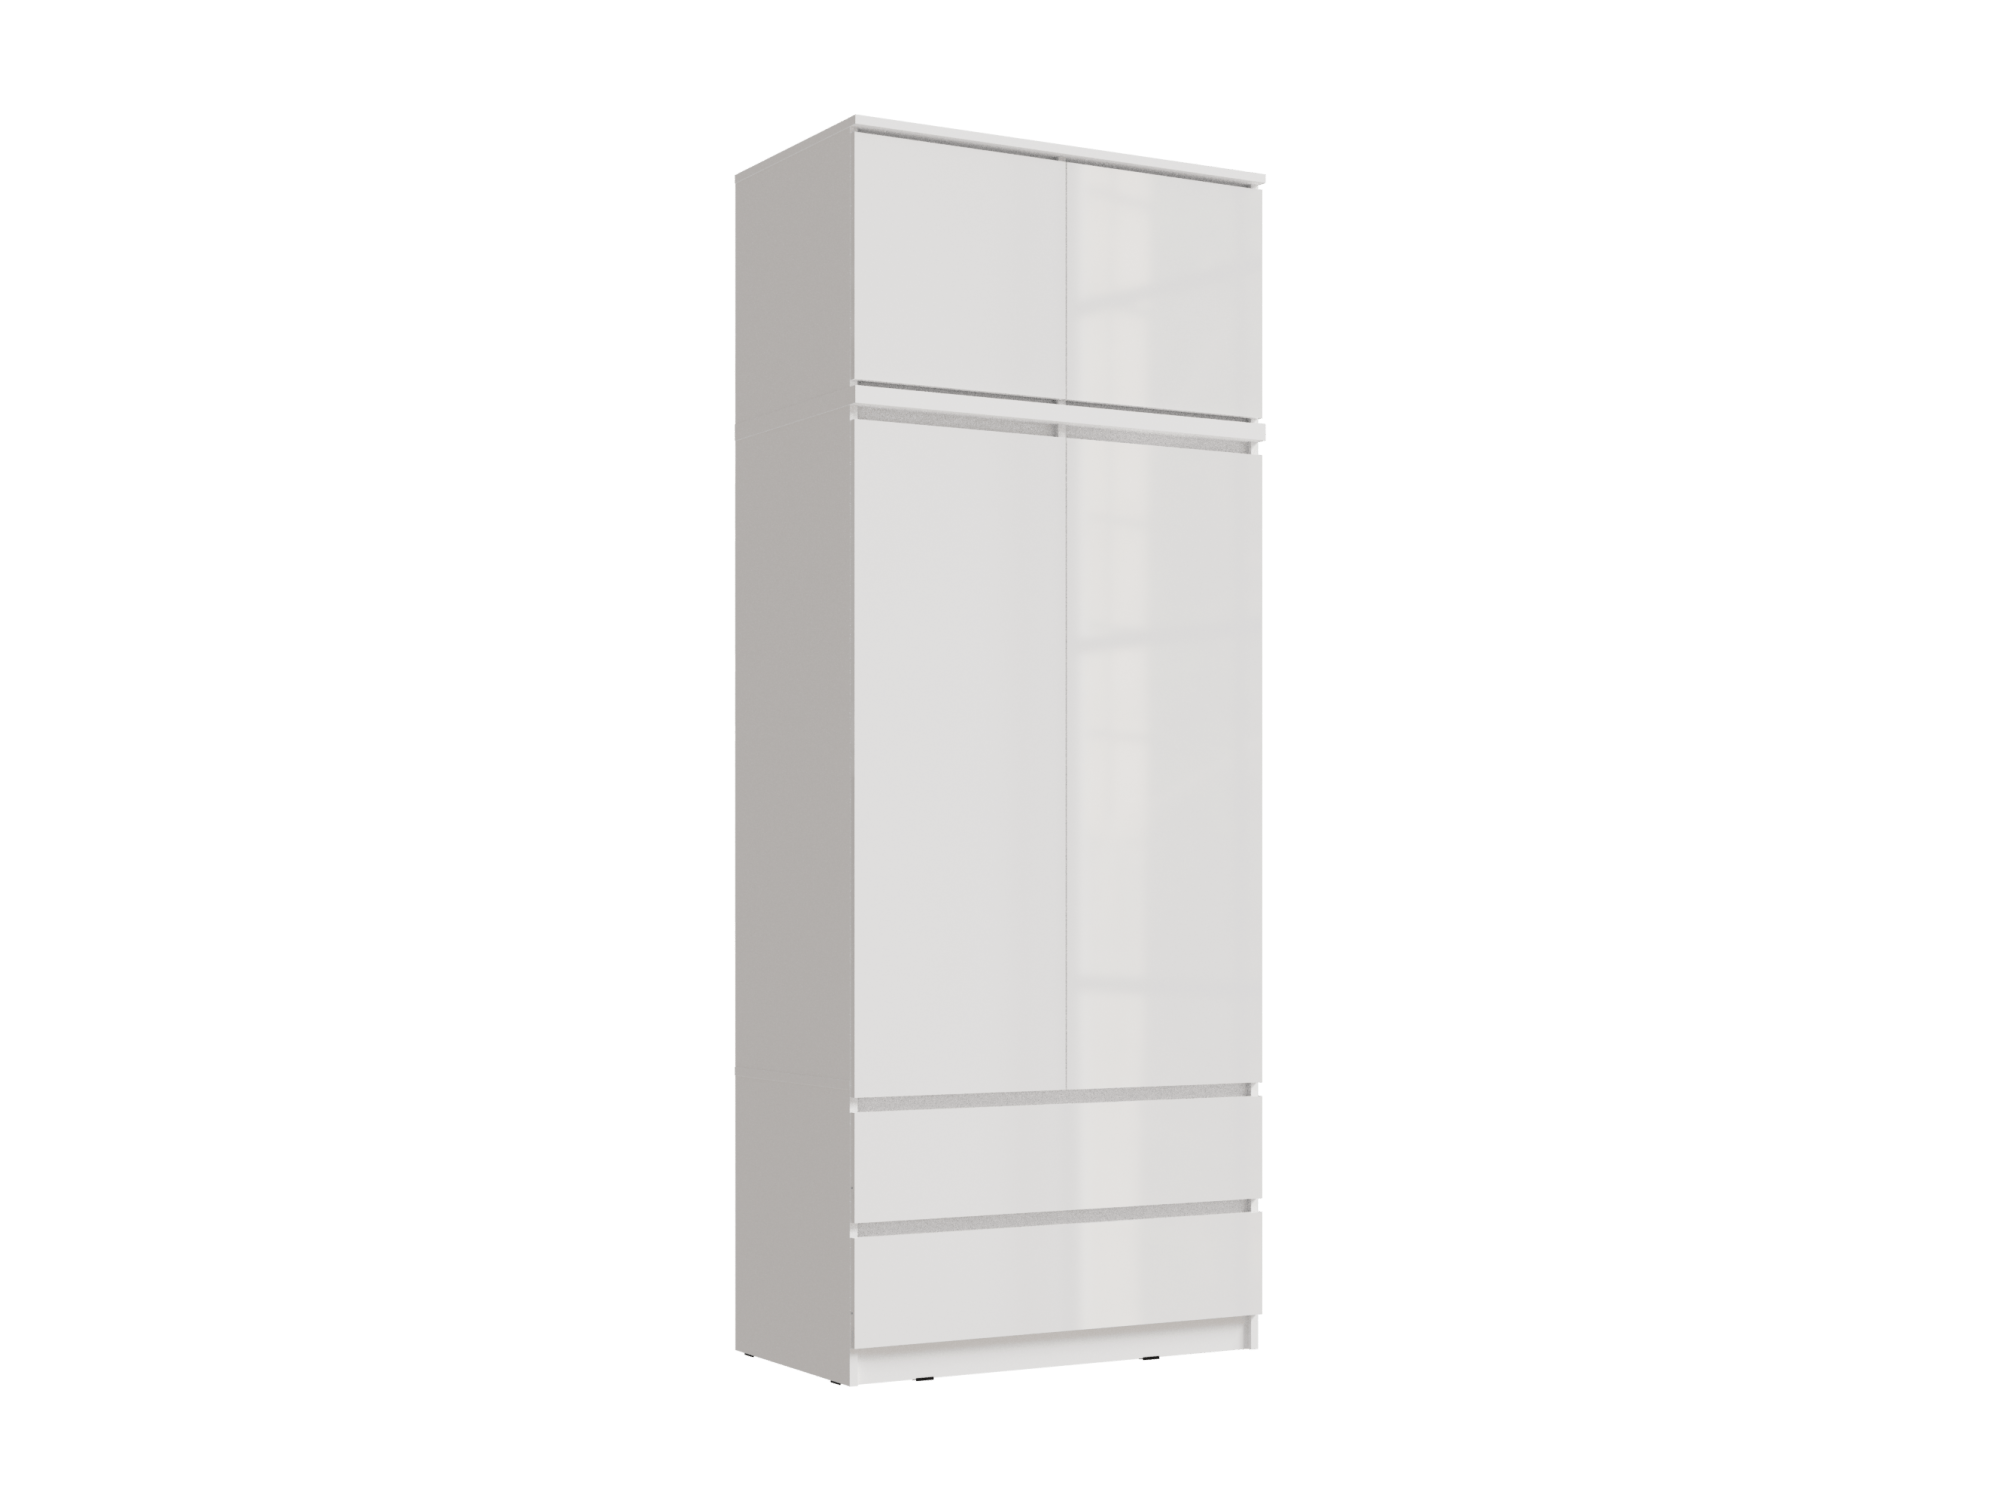 Челси Шкаф 2-х створчатый комбинированный + антресоль к шкафу 900 (Белый глянец, Белый) Белый, ЛДСП челси шкаф 2 х створчатый комбинированный белый глянец белый белый глянец белый лдсп